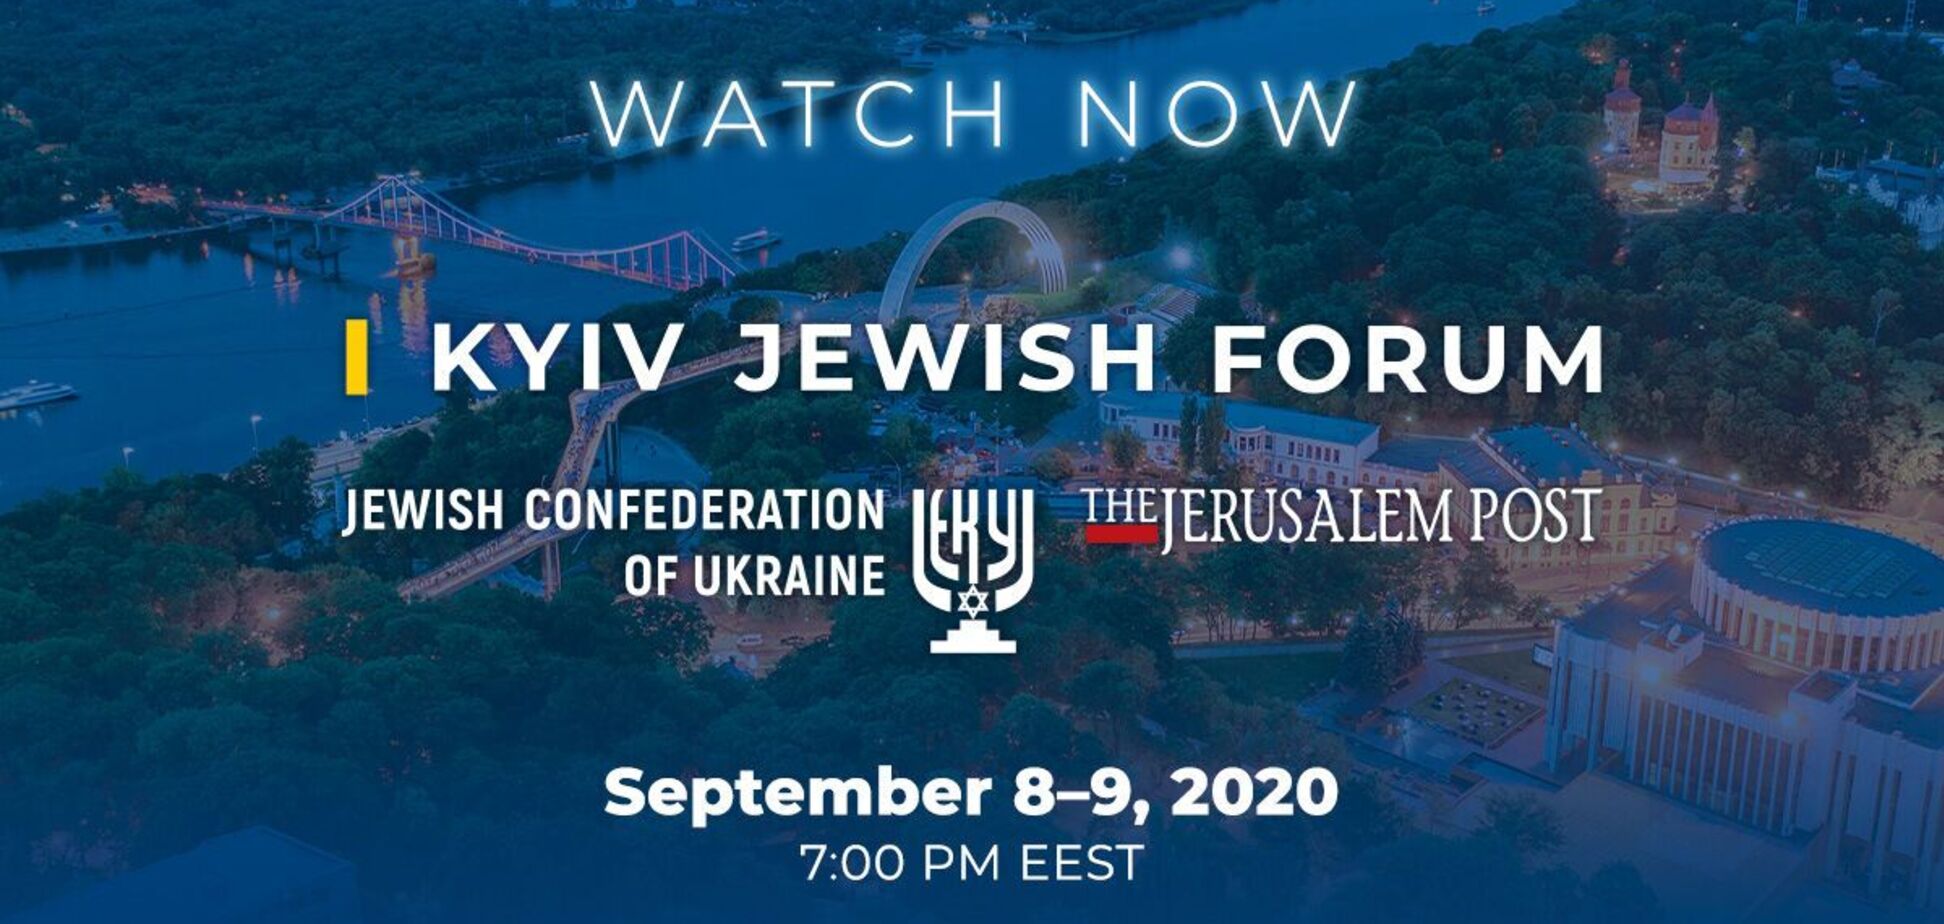 Kyiv Jewish Forum у 2020 році пройде в режимі онлайн, – Ложкін